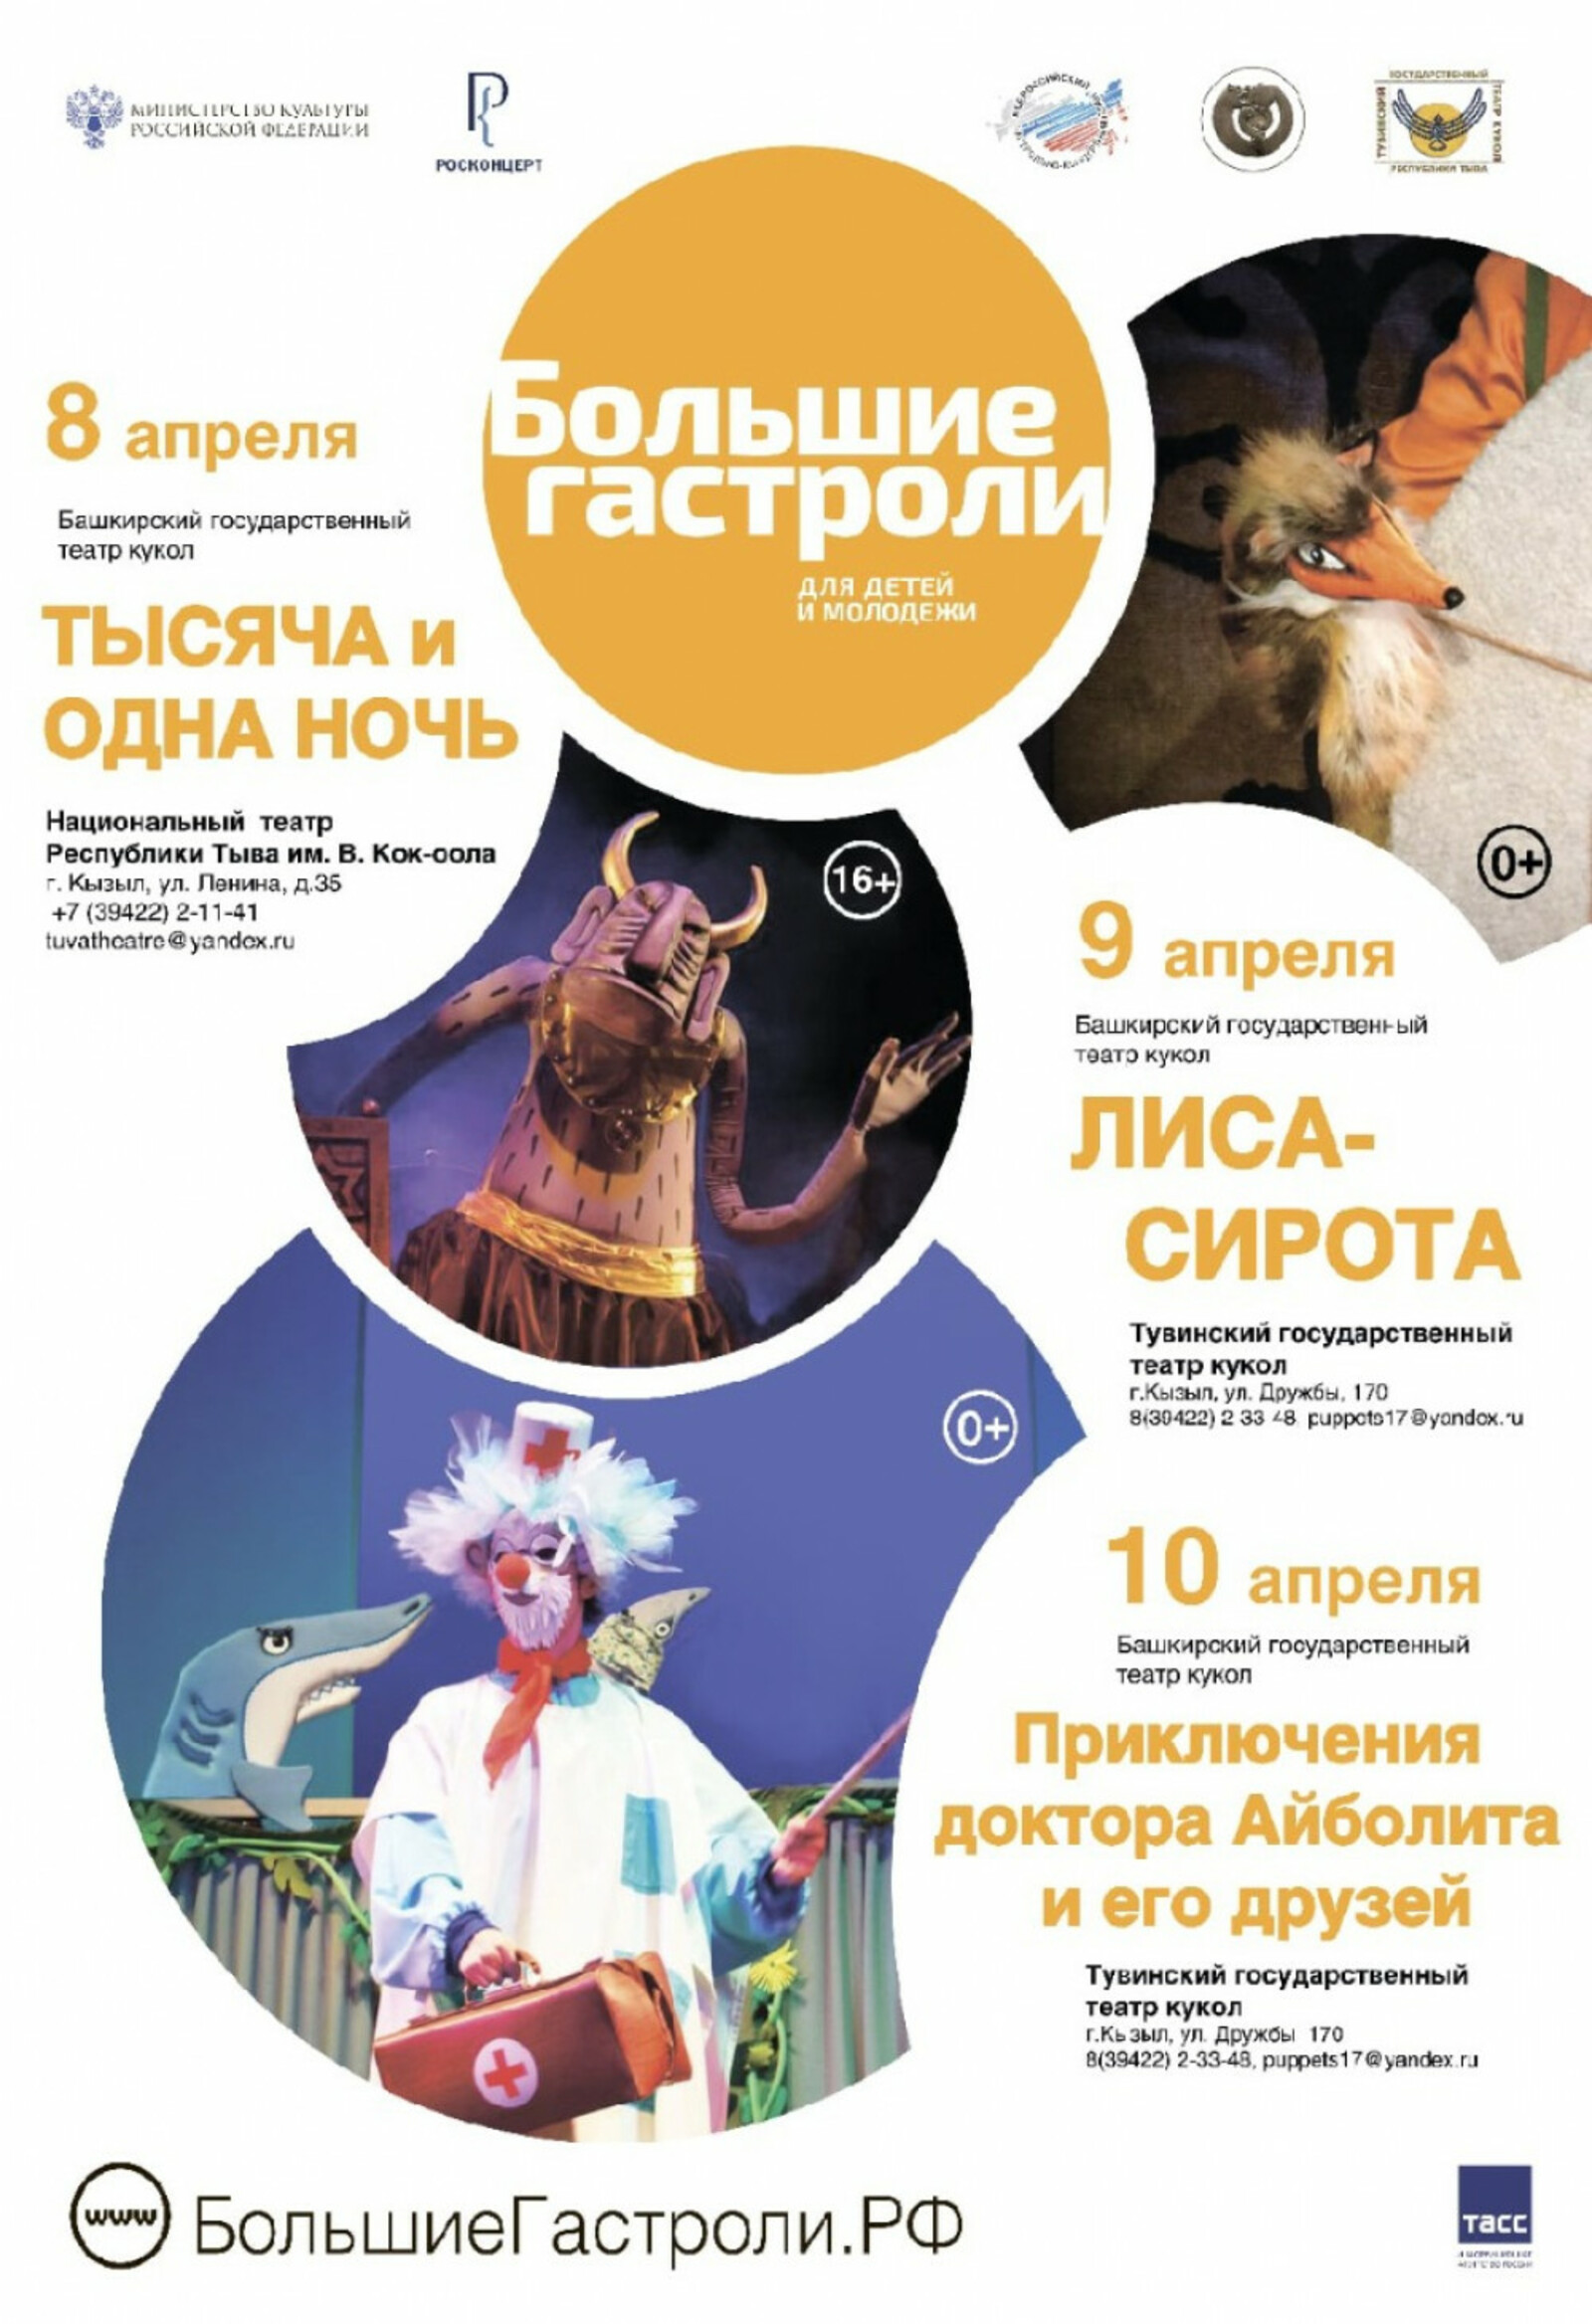 Башкирский театр кукол выступит в Республике Тыва в рамках федеральной программы "Большие гастроли"